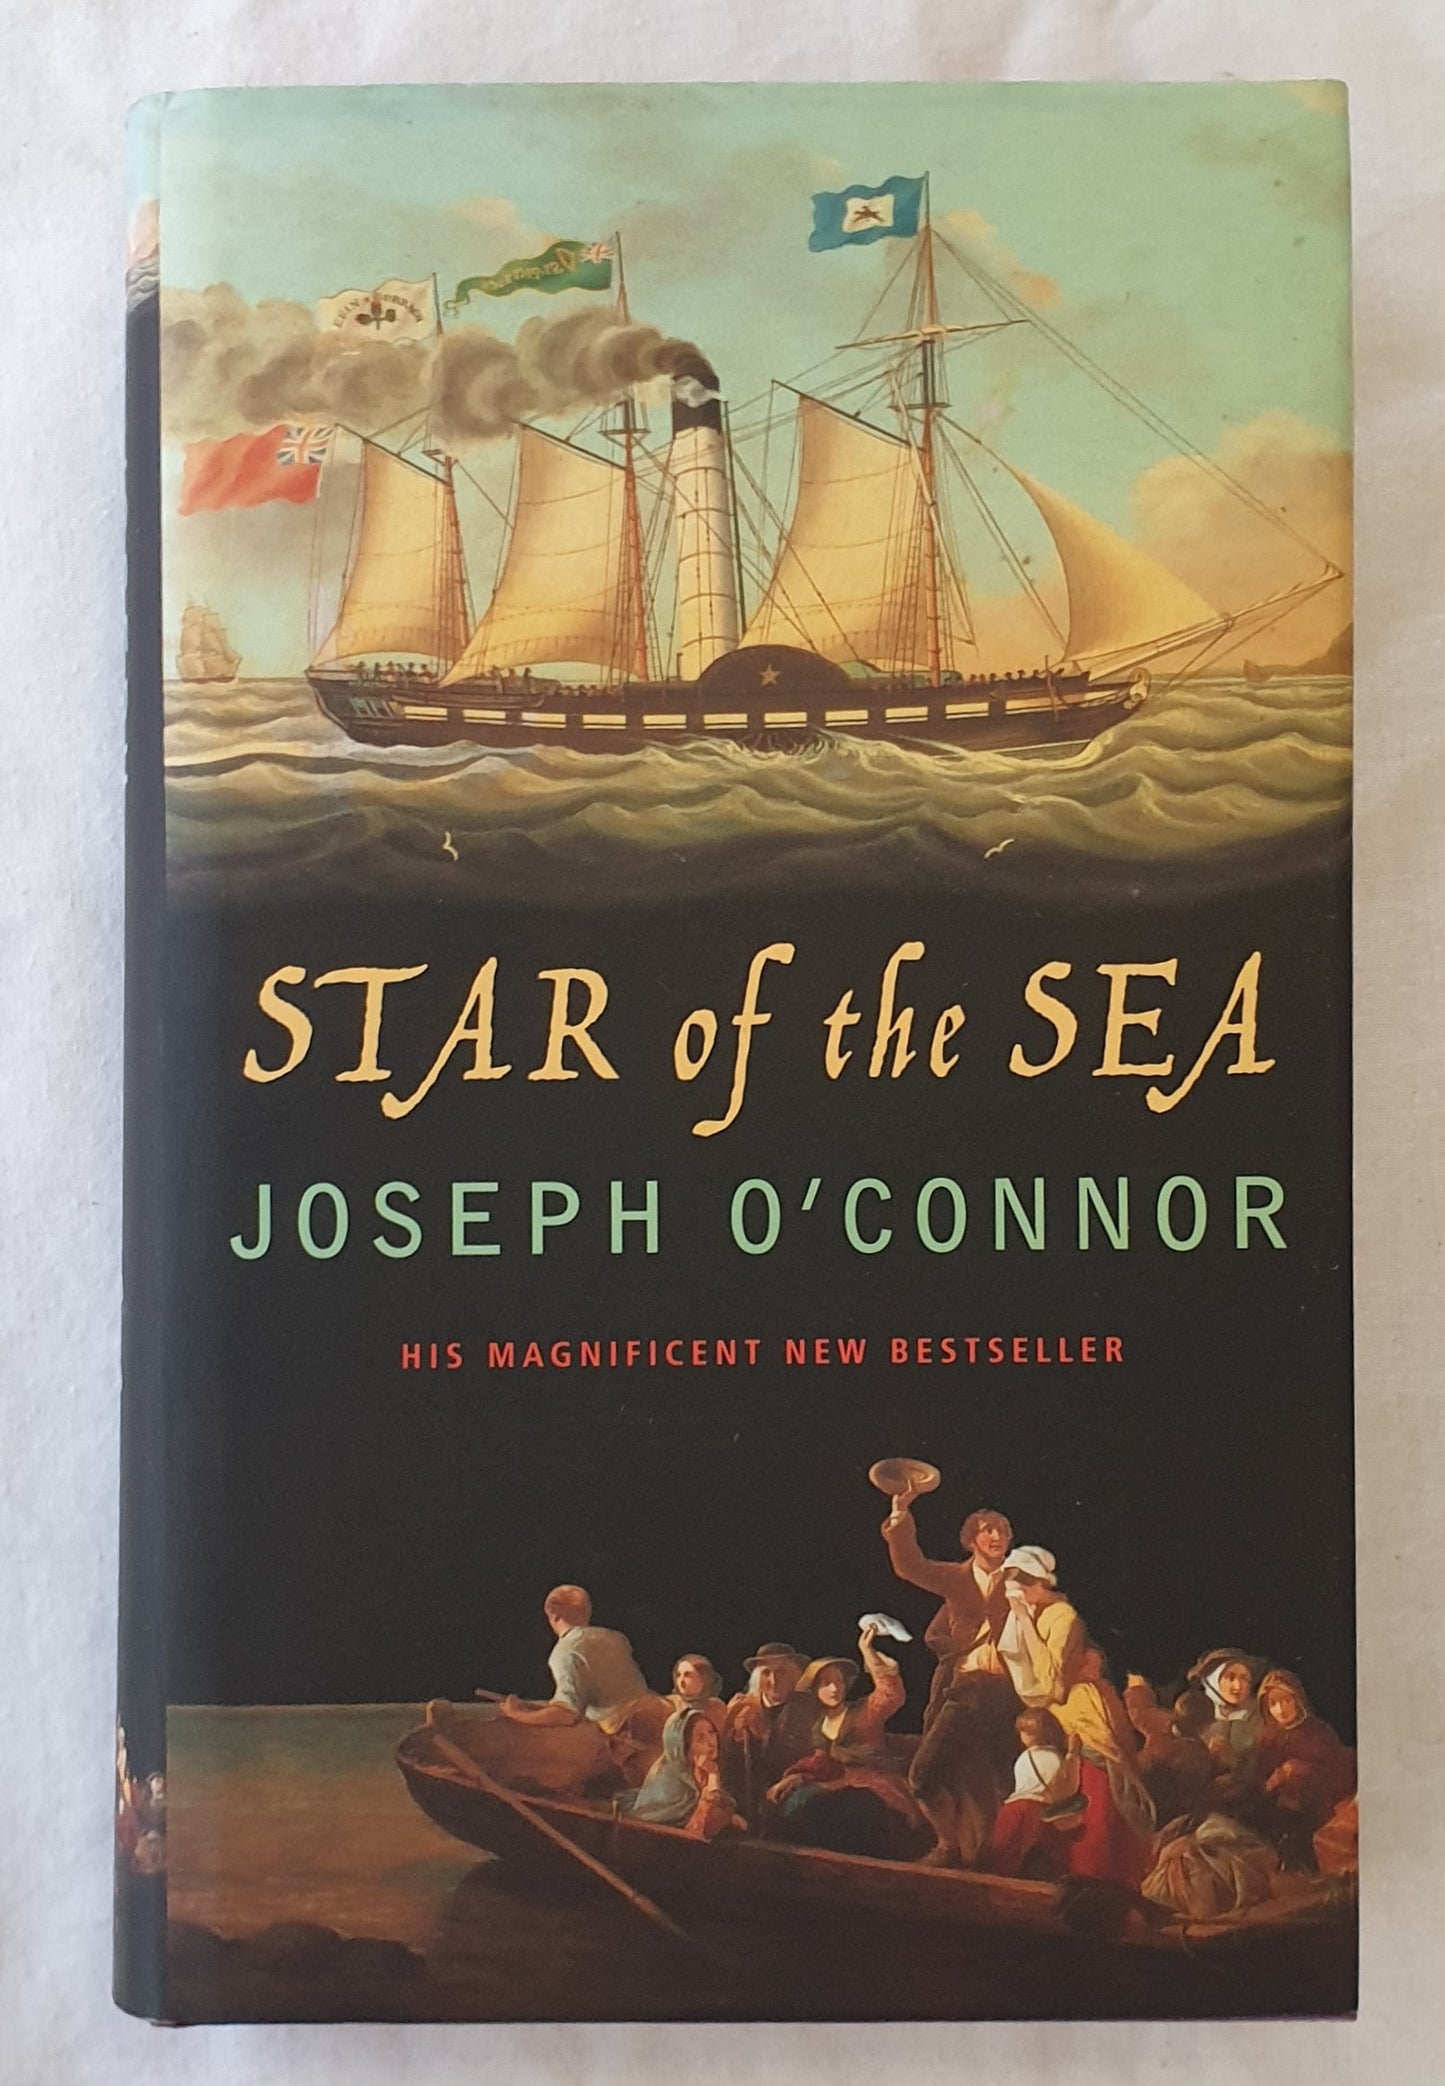 Star of the Sea by Joseph O’Connor